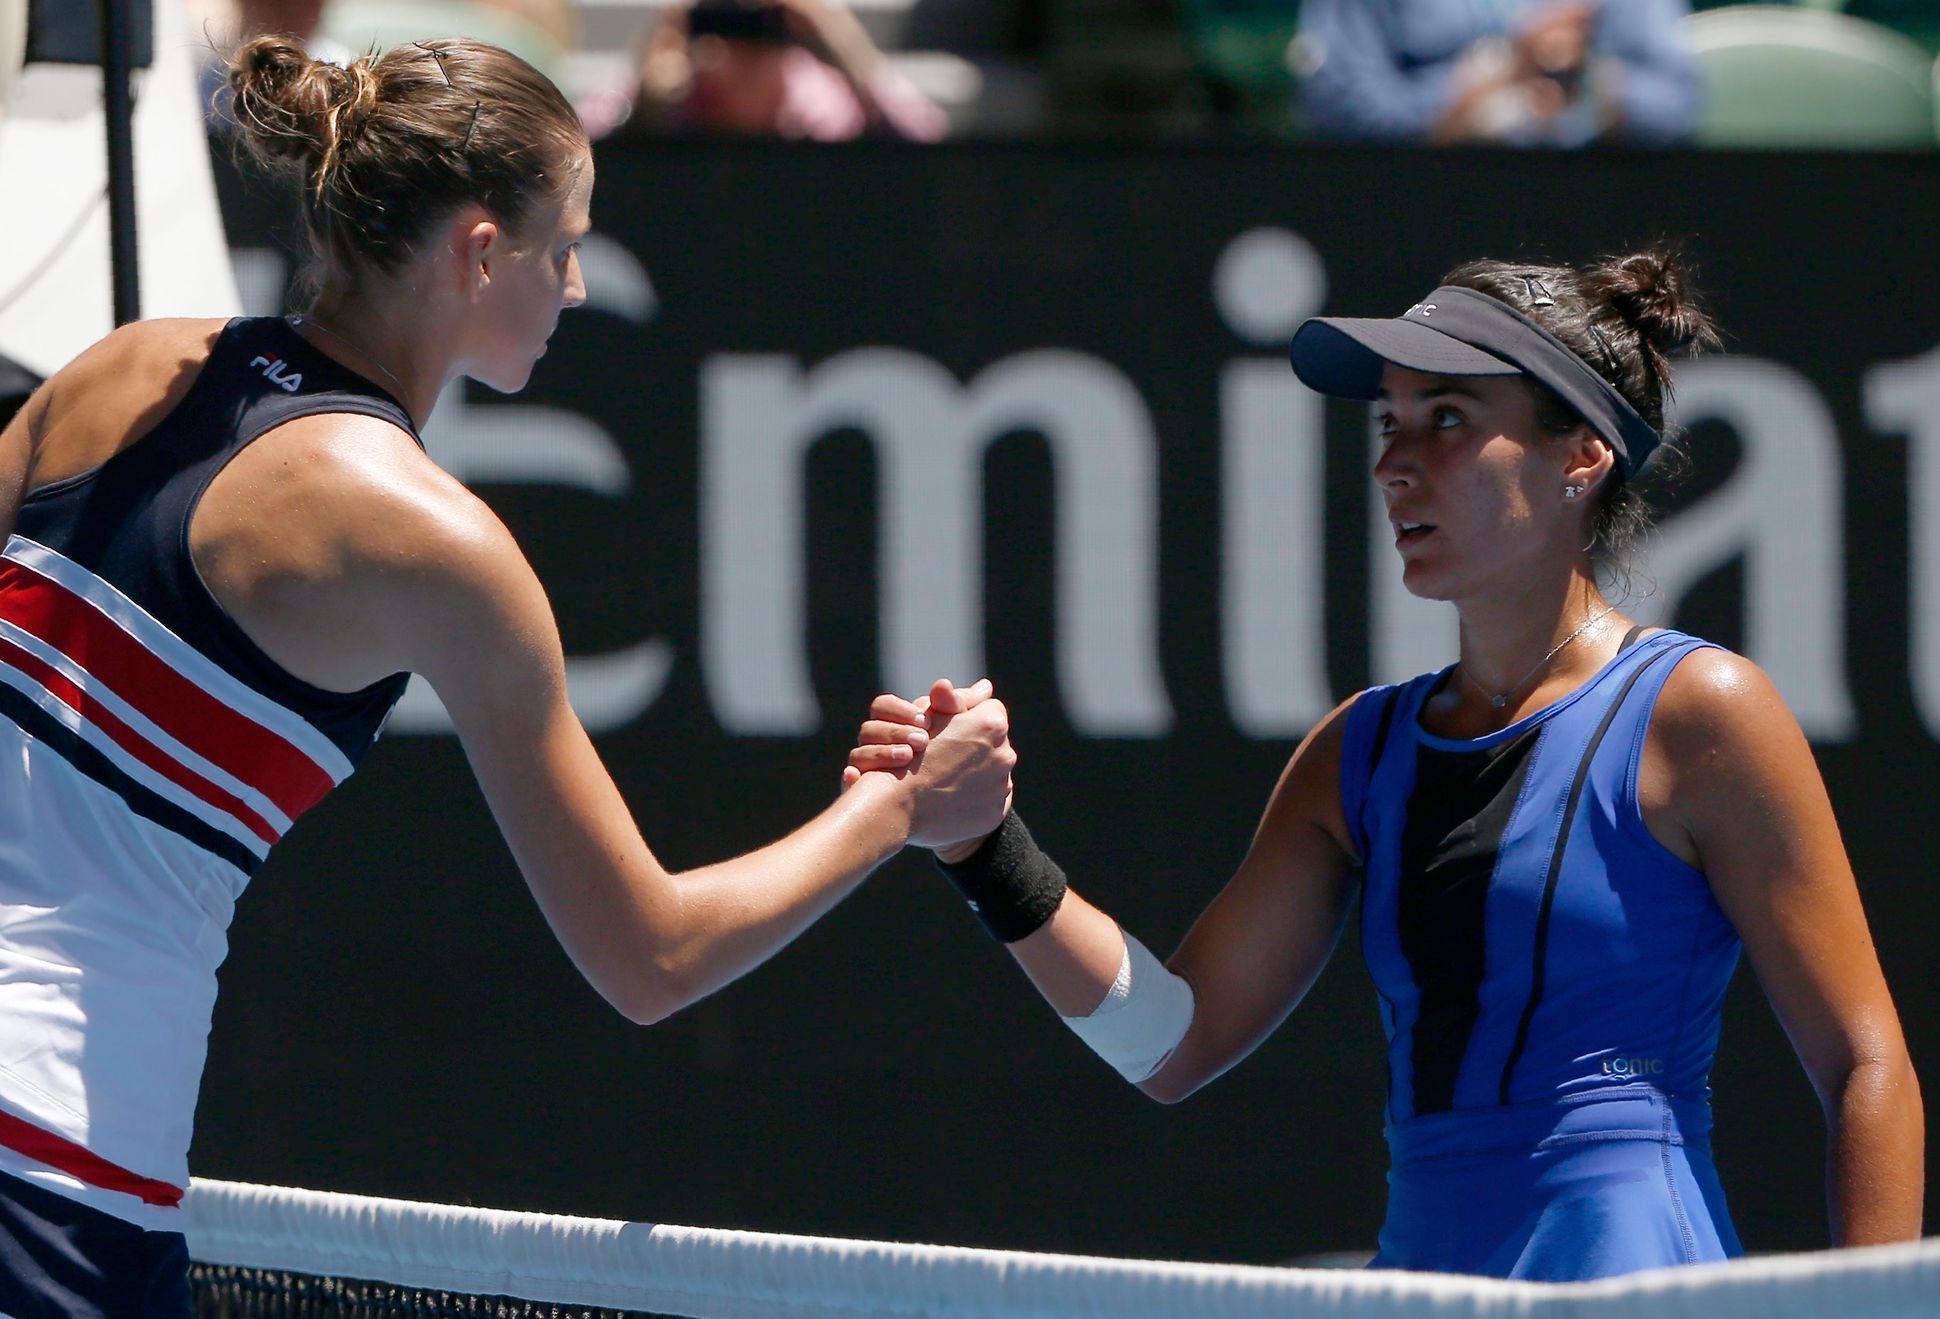 Karolína Plíšková a Veronica Cepedeová na Australian Open 2018